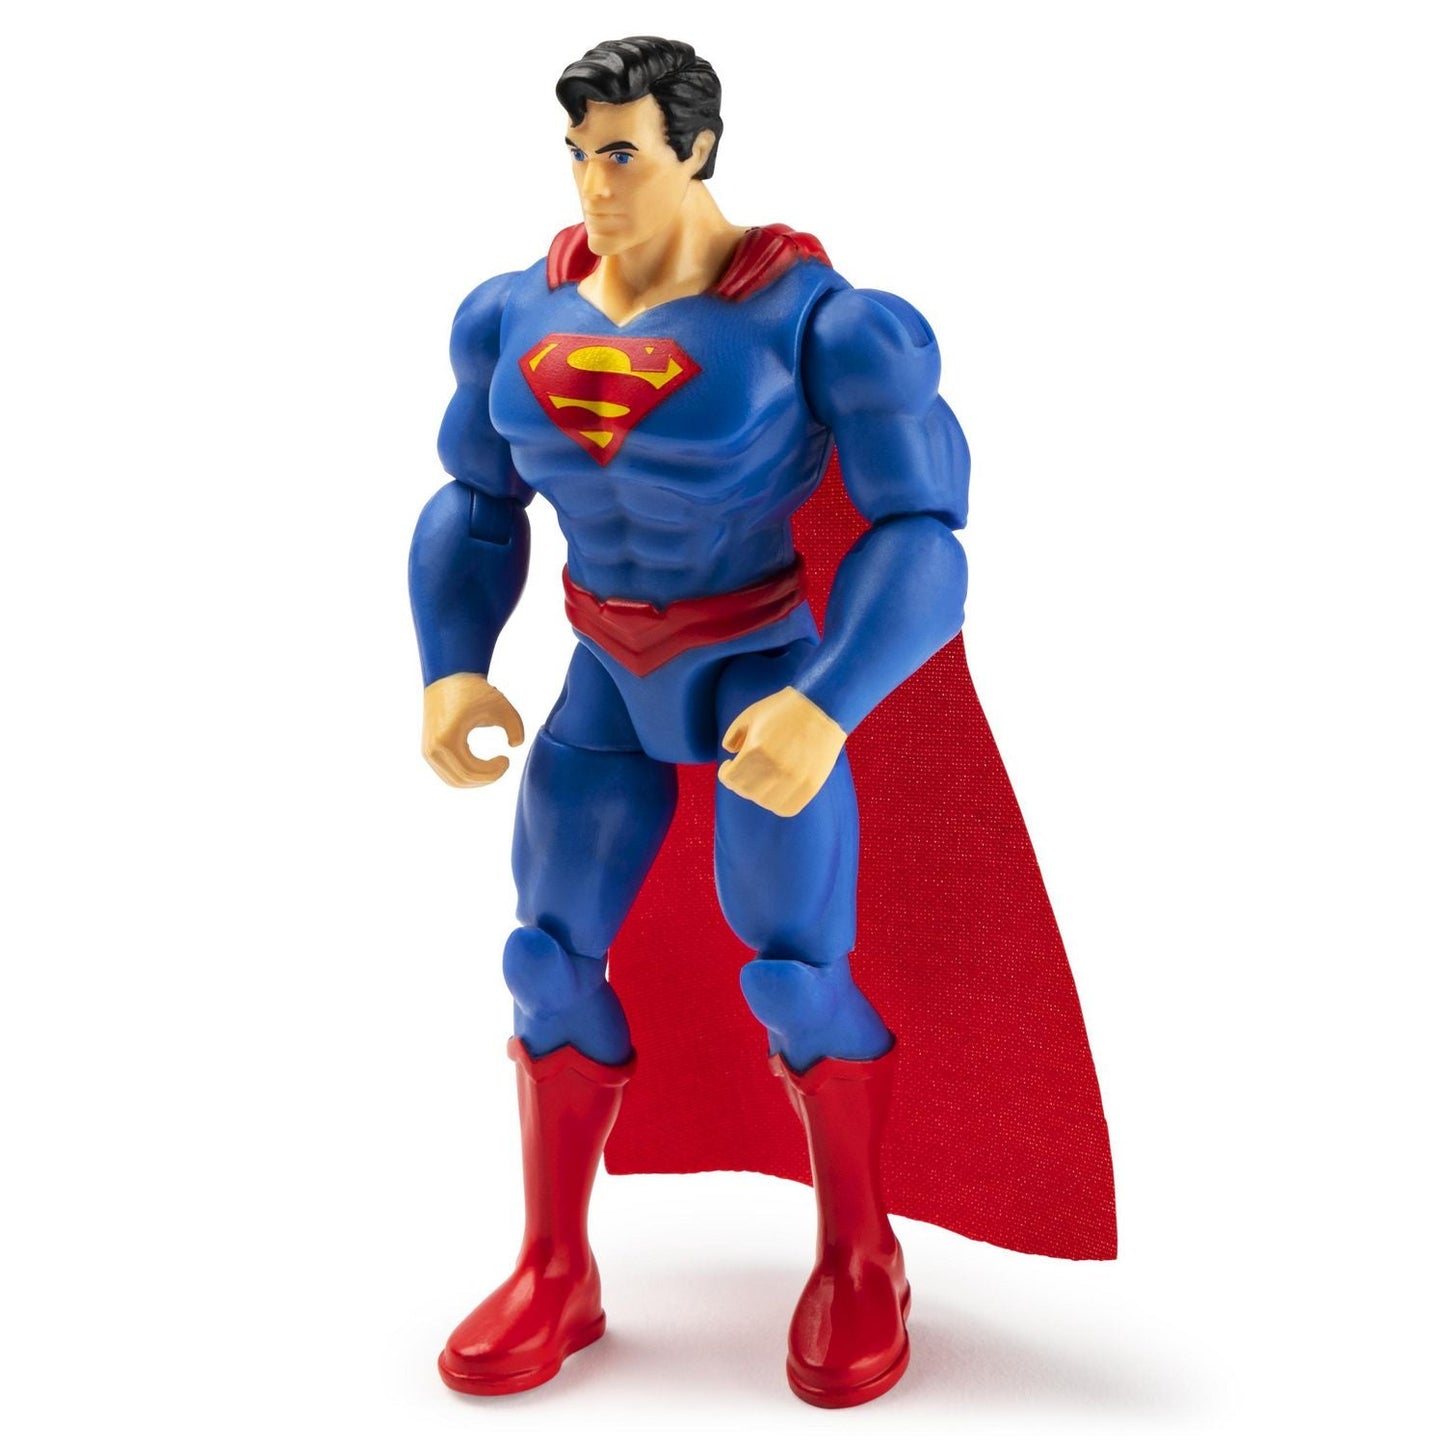 4" Superman Action Figure